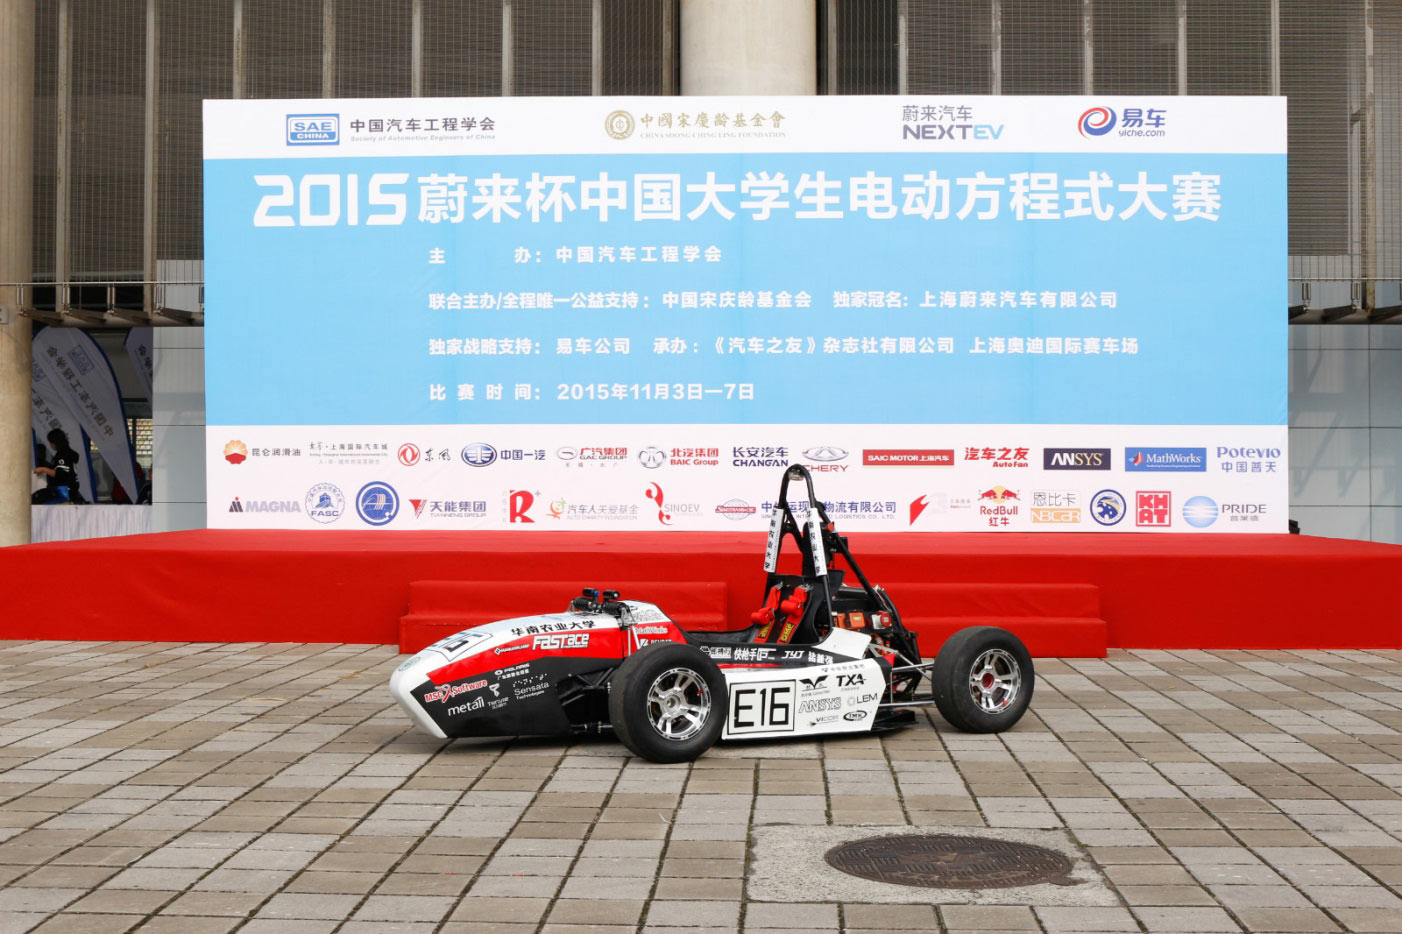 2015大学生电动方程式赛车-华南农业大学赛况及活动宣传